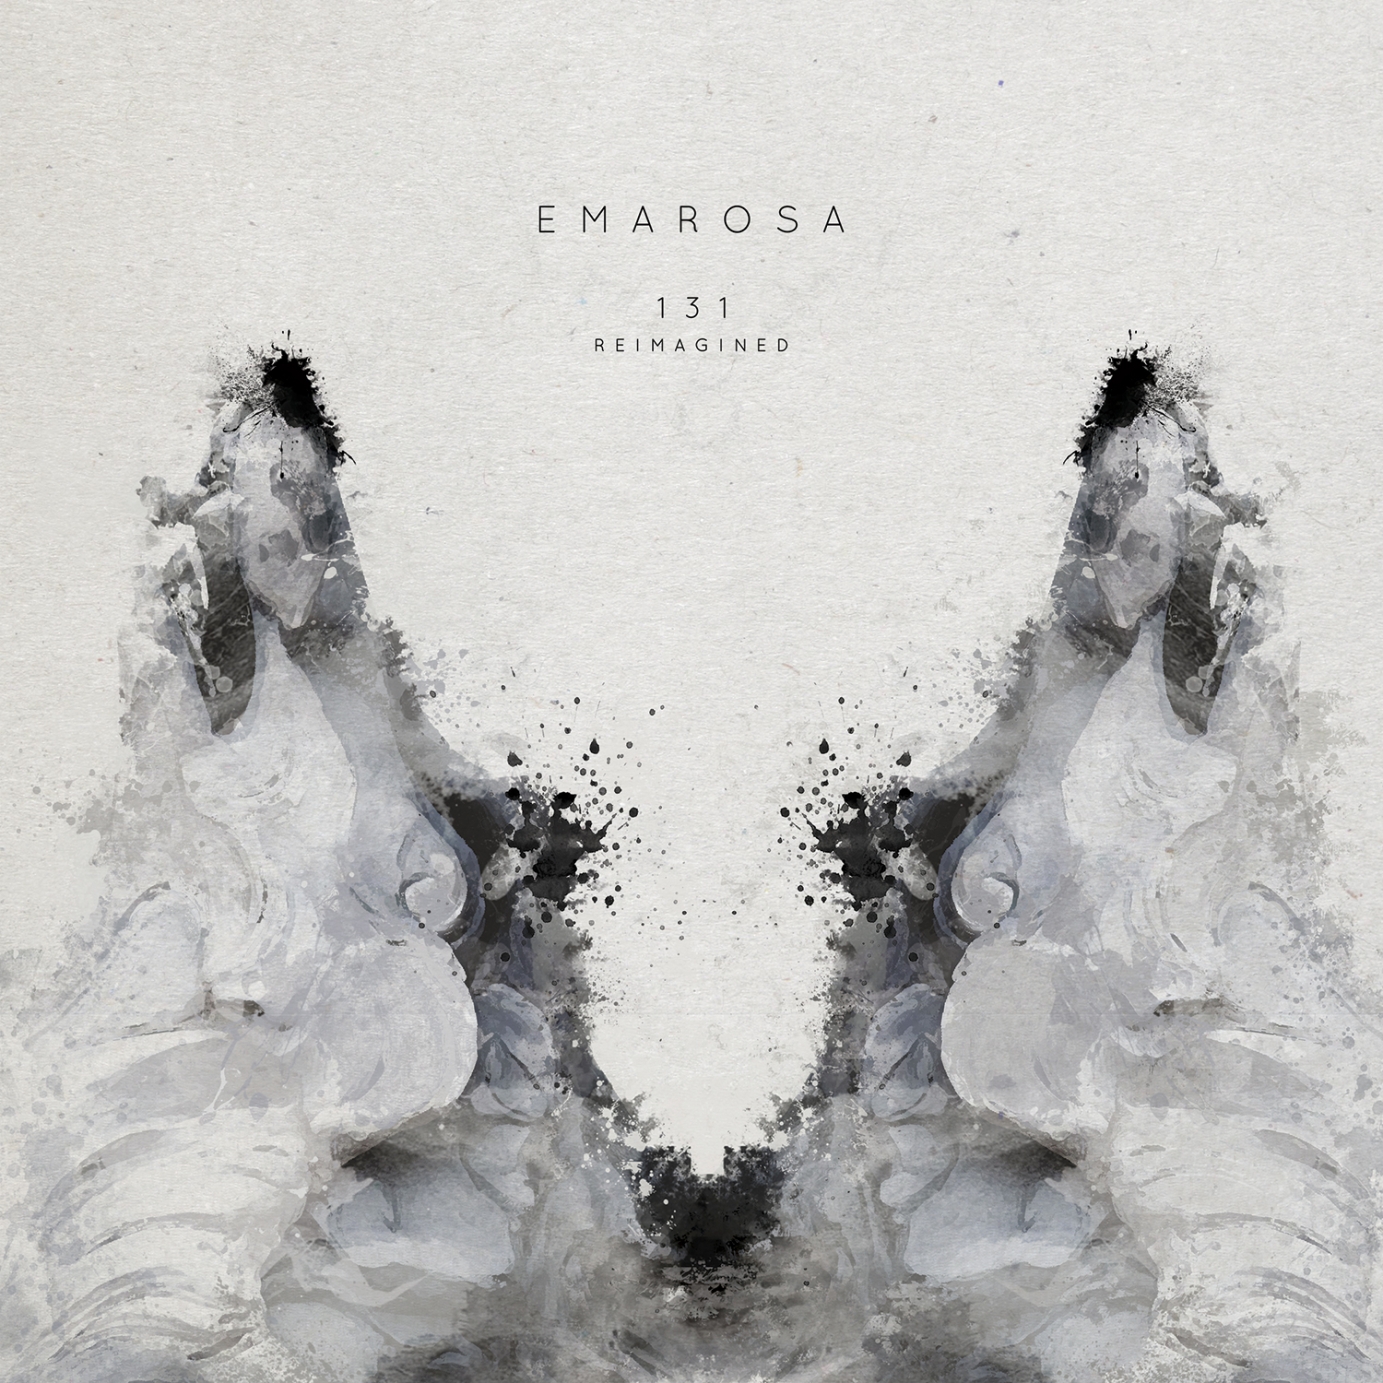 Graphic design for Emarosa by chiaraceccaioni